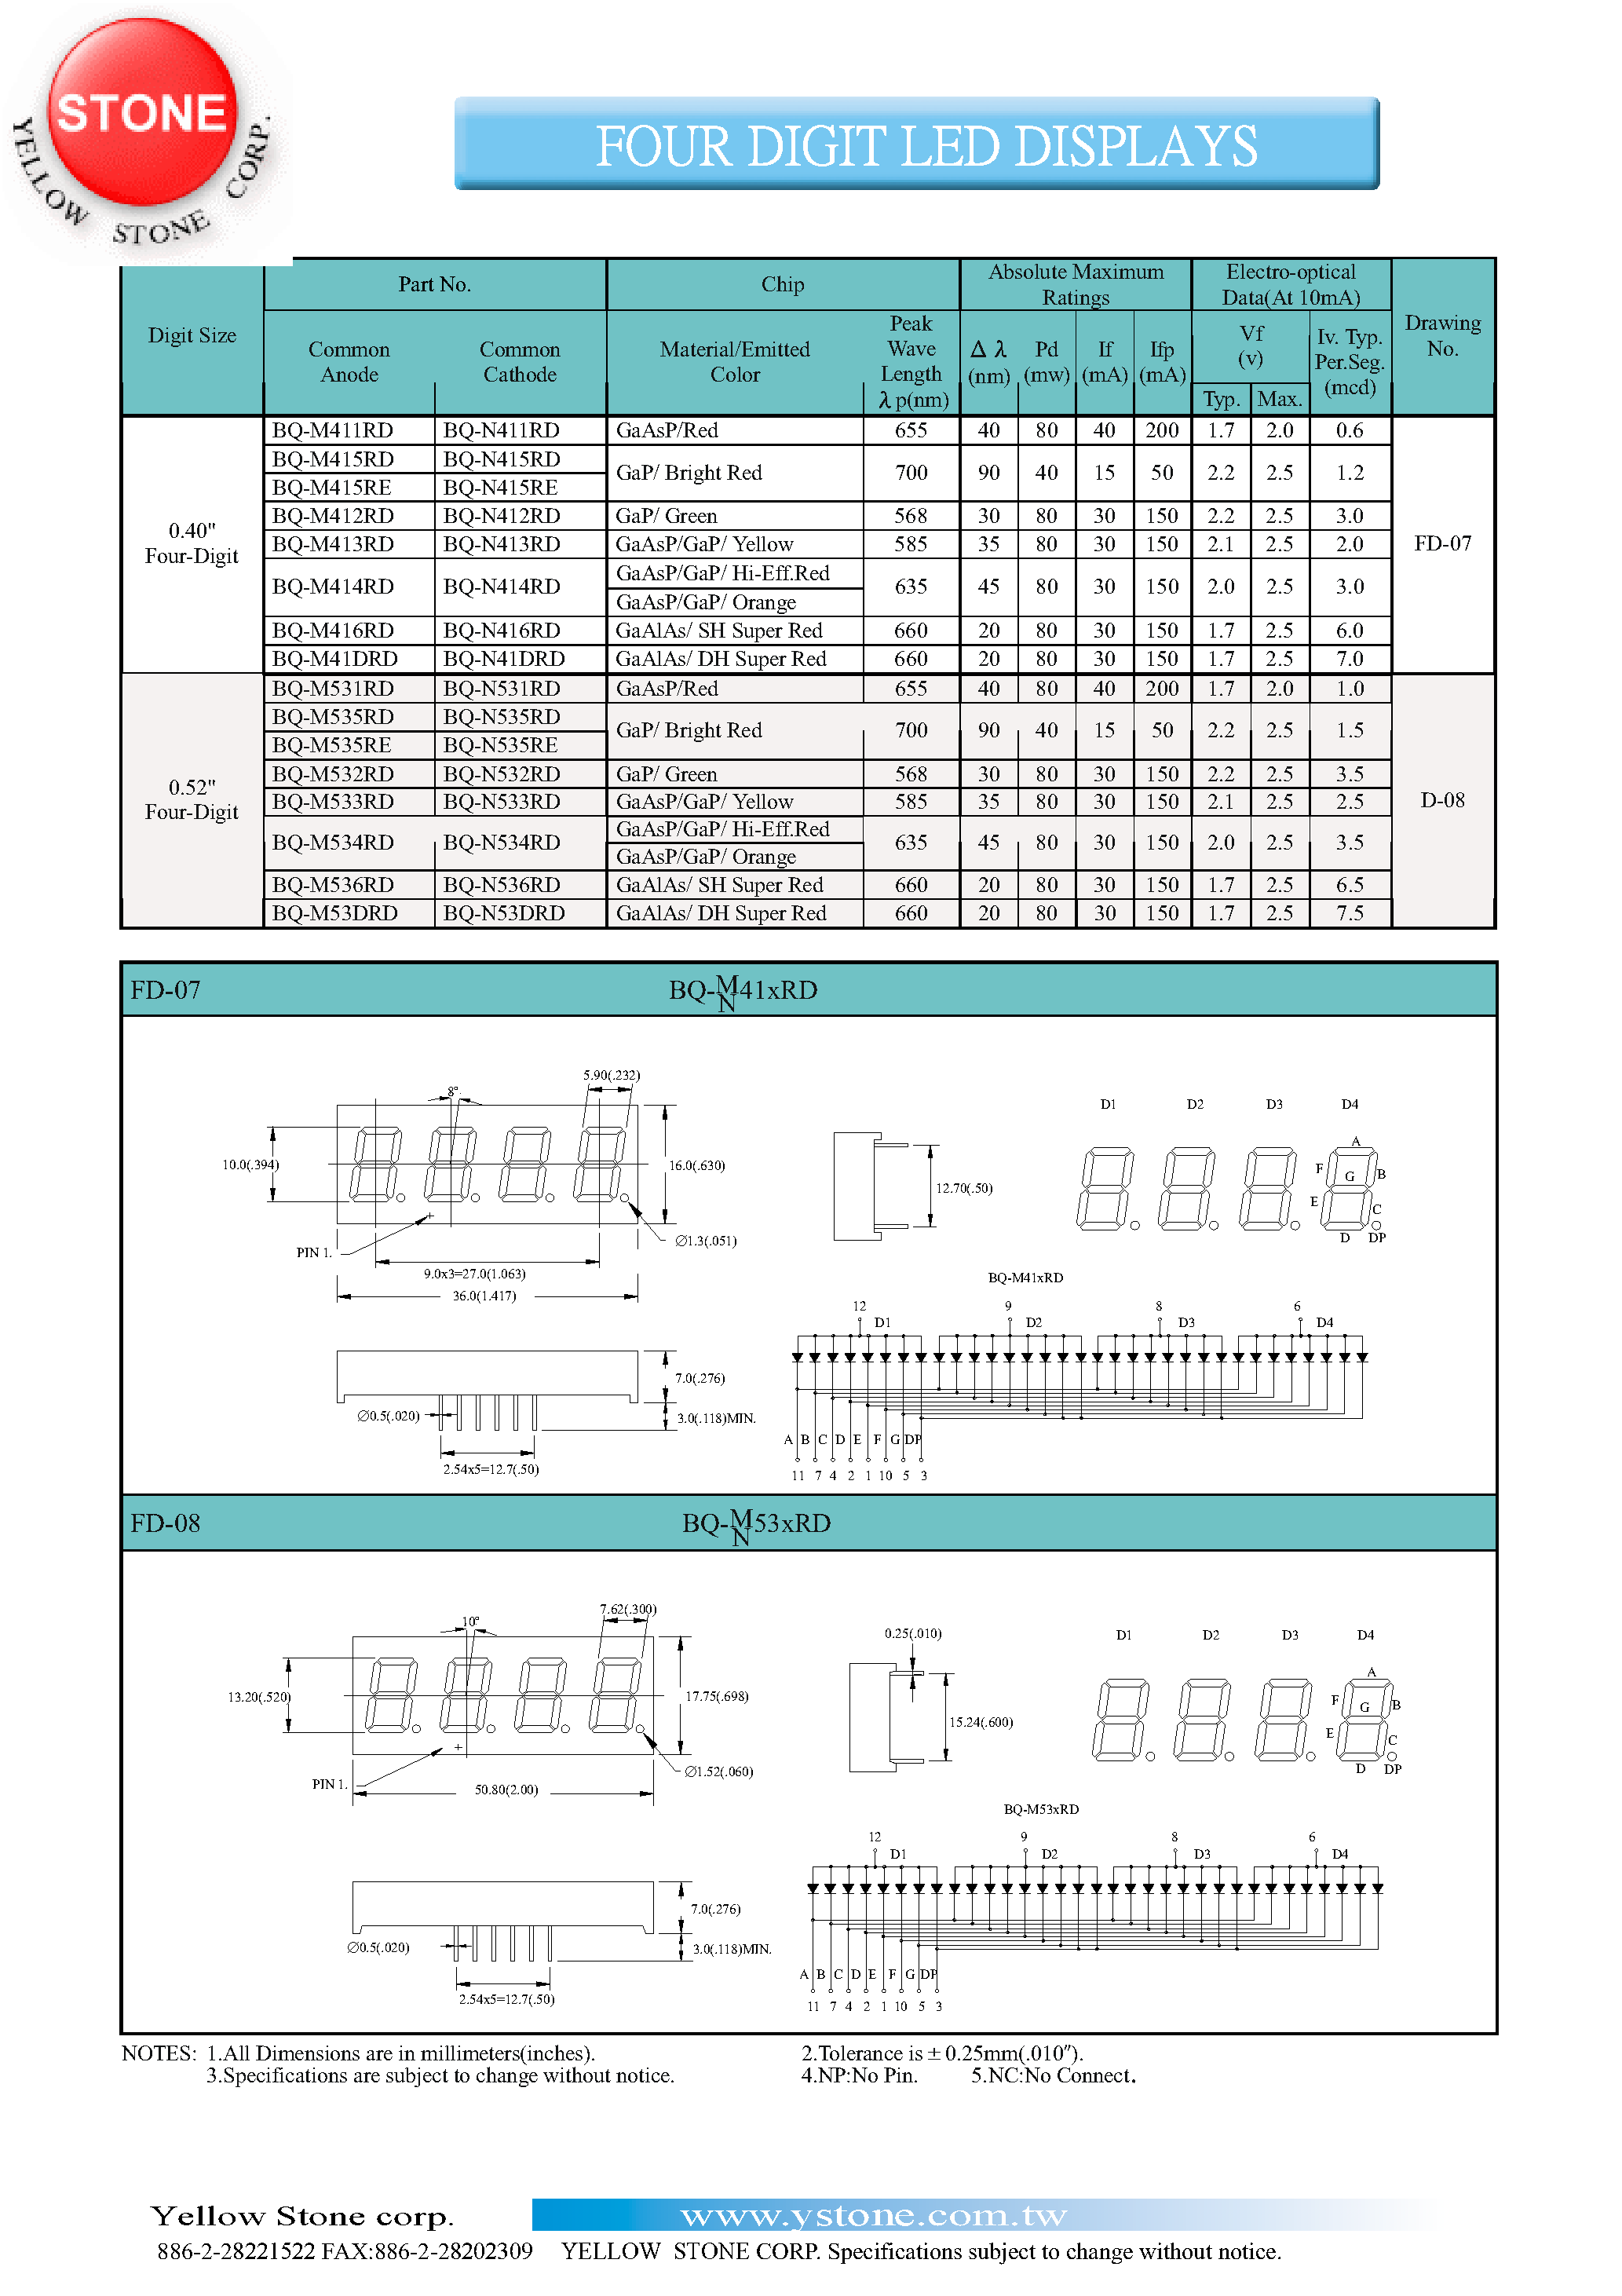 Datasheet BQ-M414RD - FOUR DIGIT LED DISPLAYS page 1